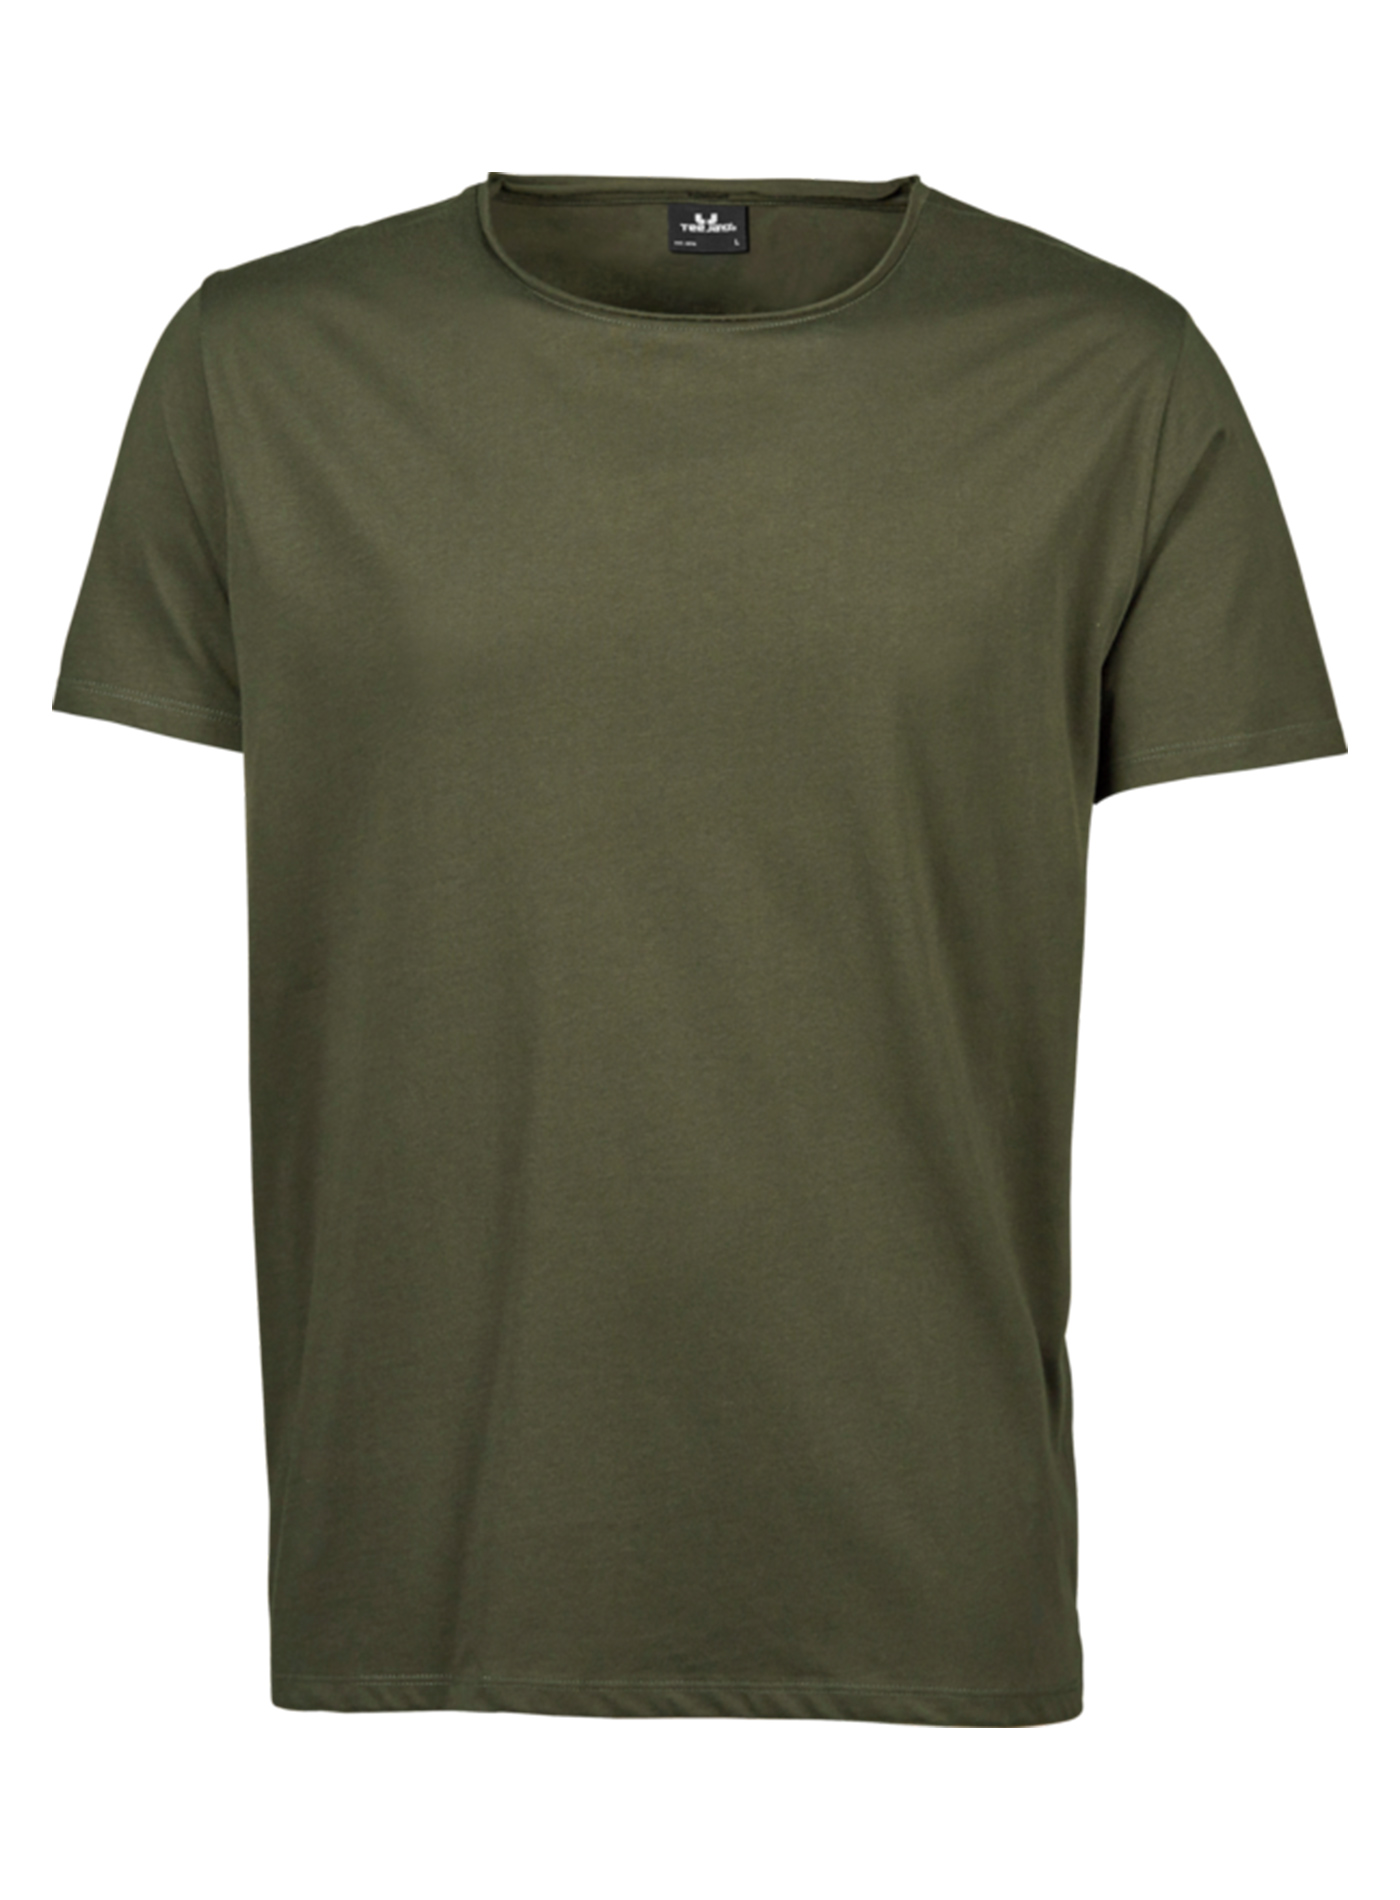 Pánské tričko Raw Tee Jays - Olivově zelená XL